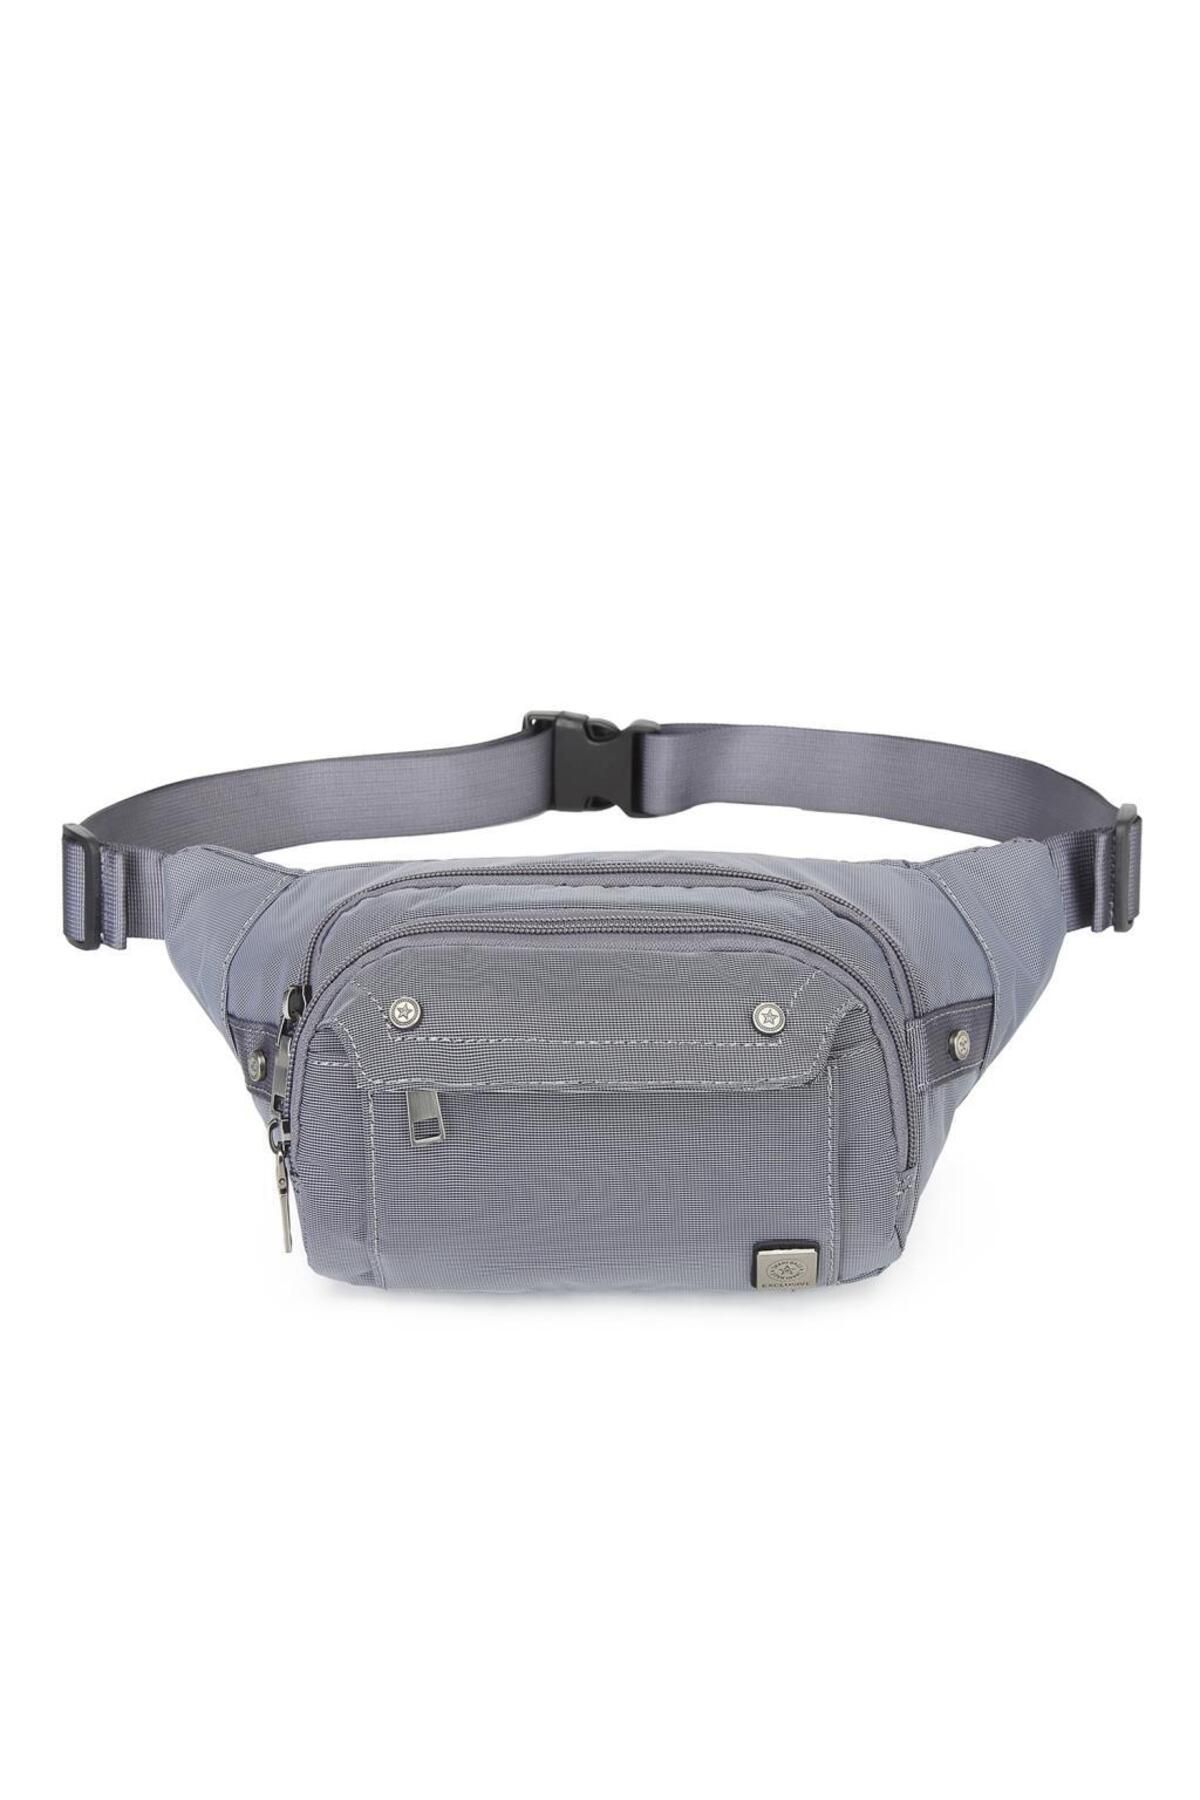 Smart Bags Exclusive Serisi Uniseks Bodybag Bel Çantası Smart Bags 8705